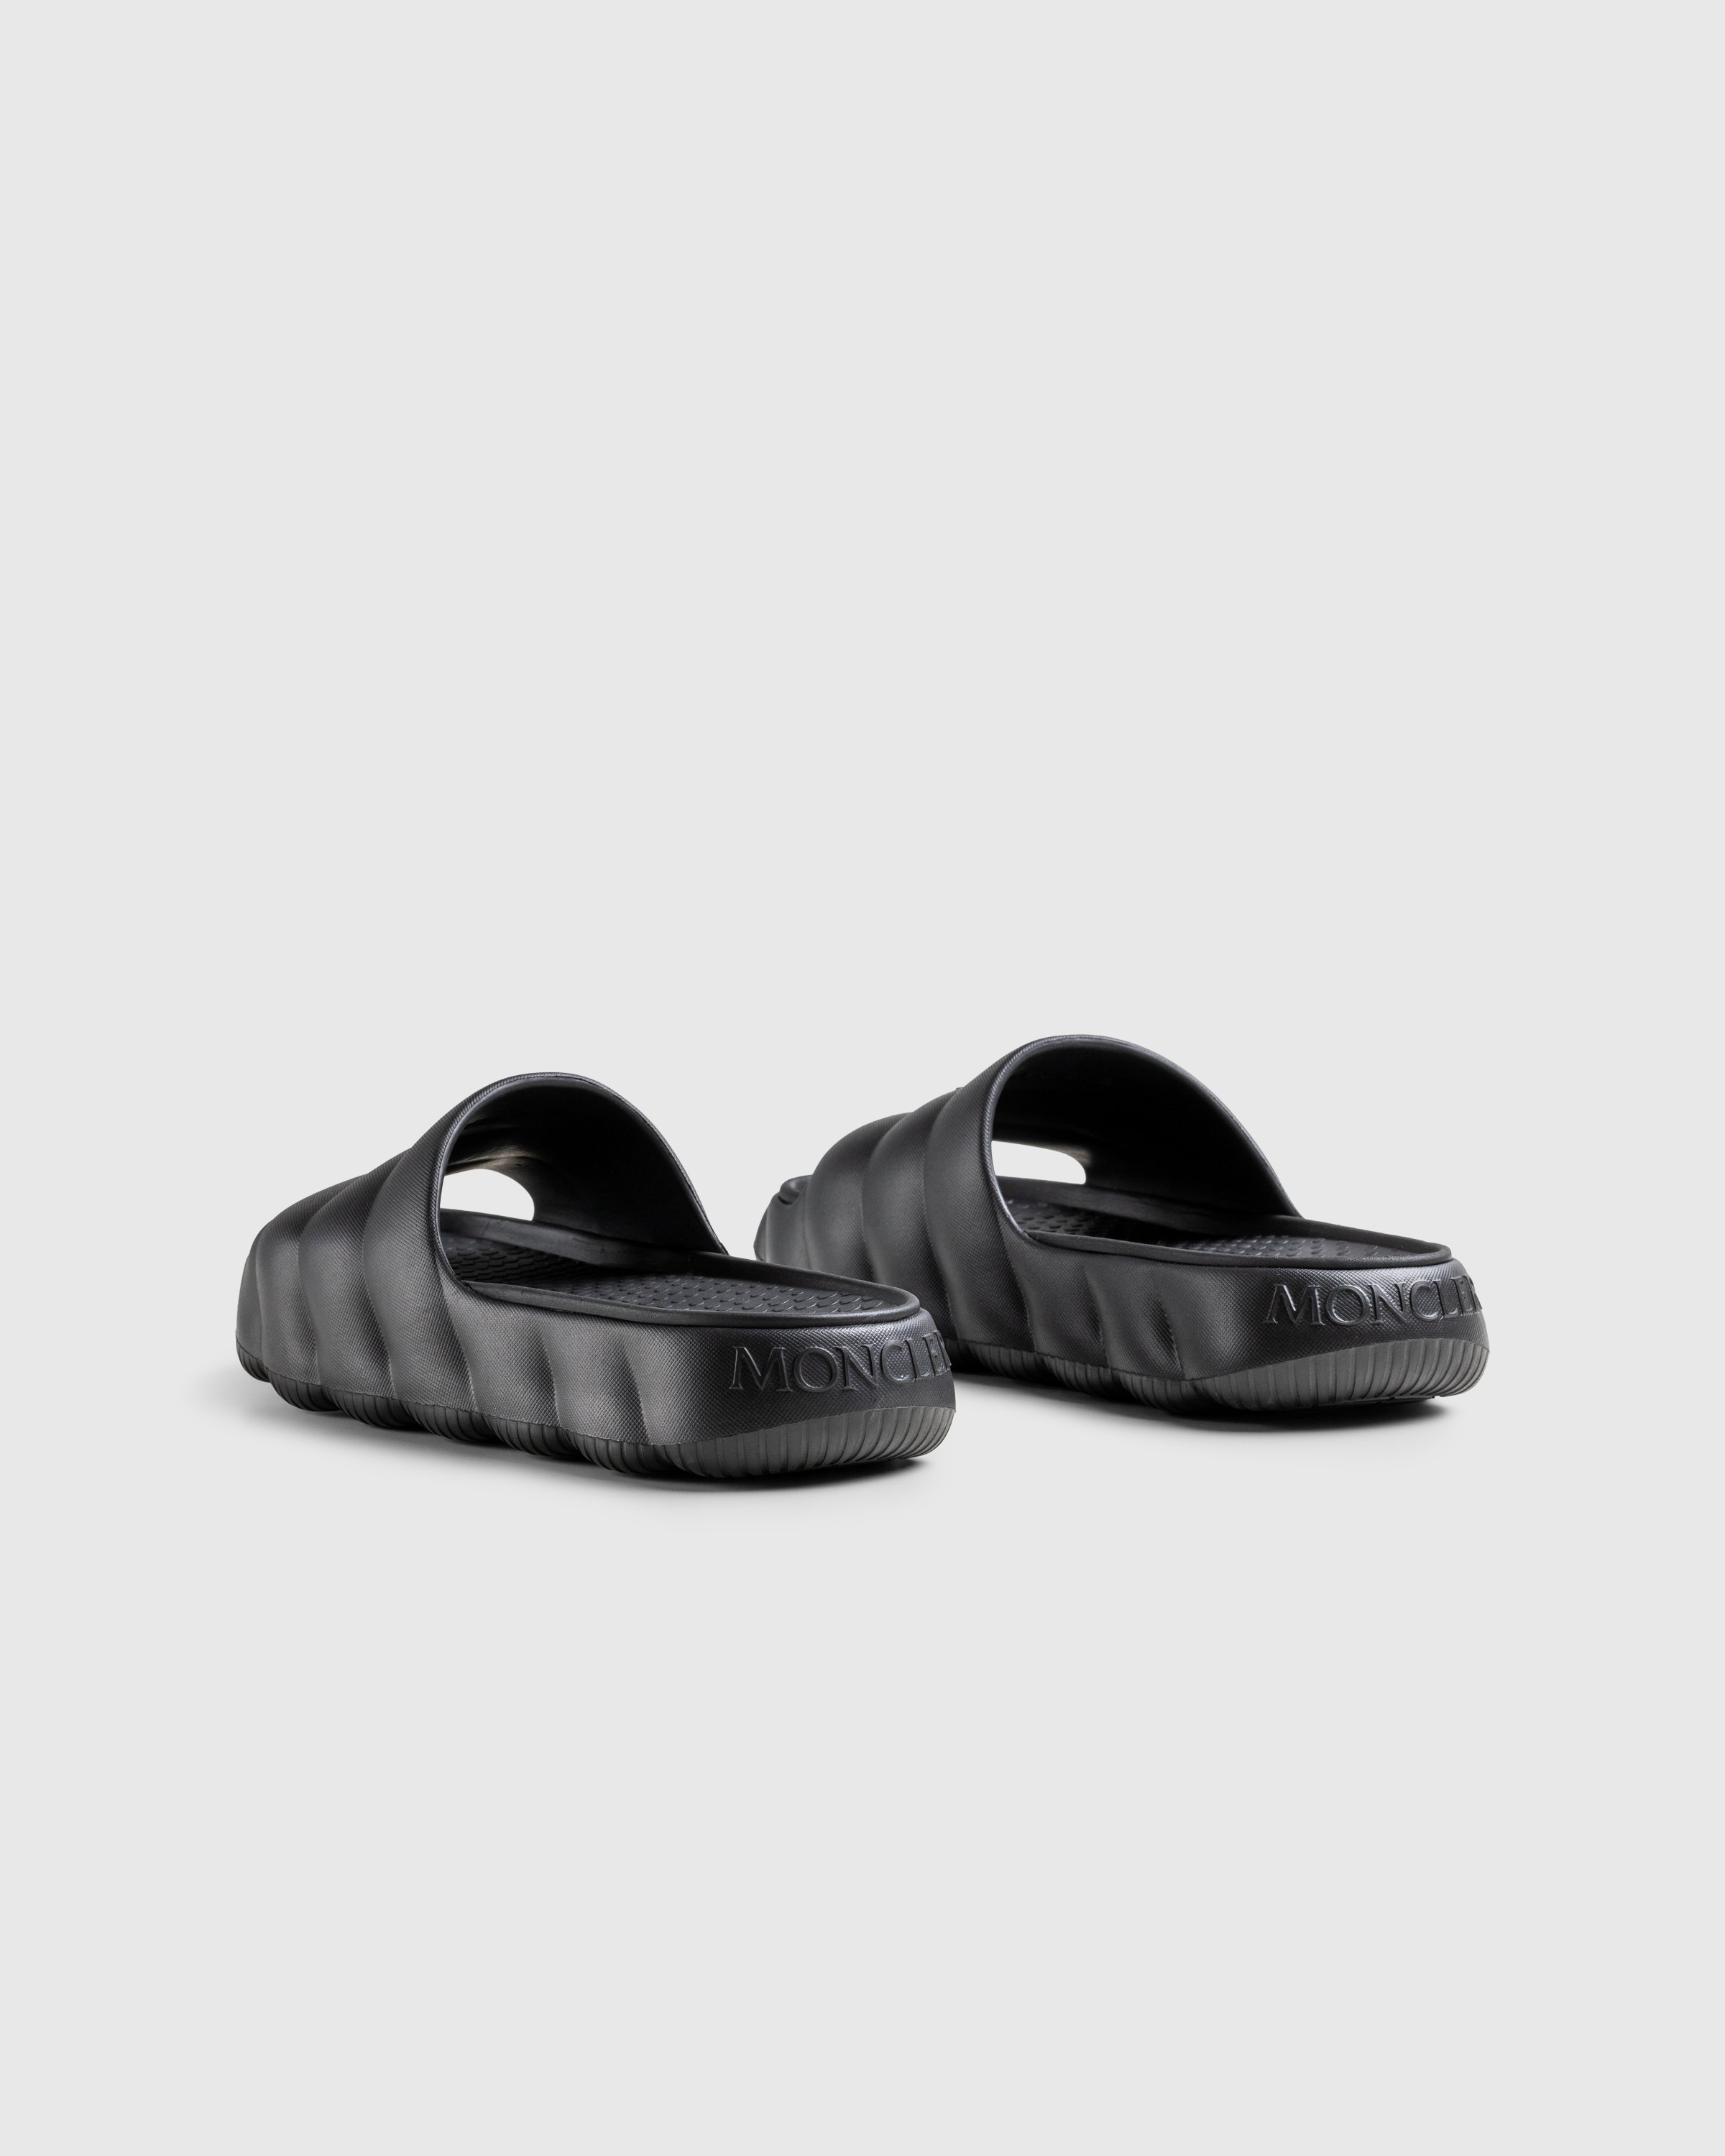 Moncler - LILO SLIDES BLACK - Footwear - Black - Image 4